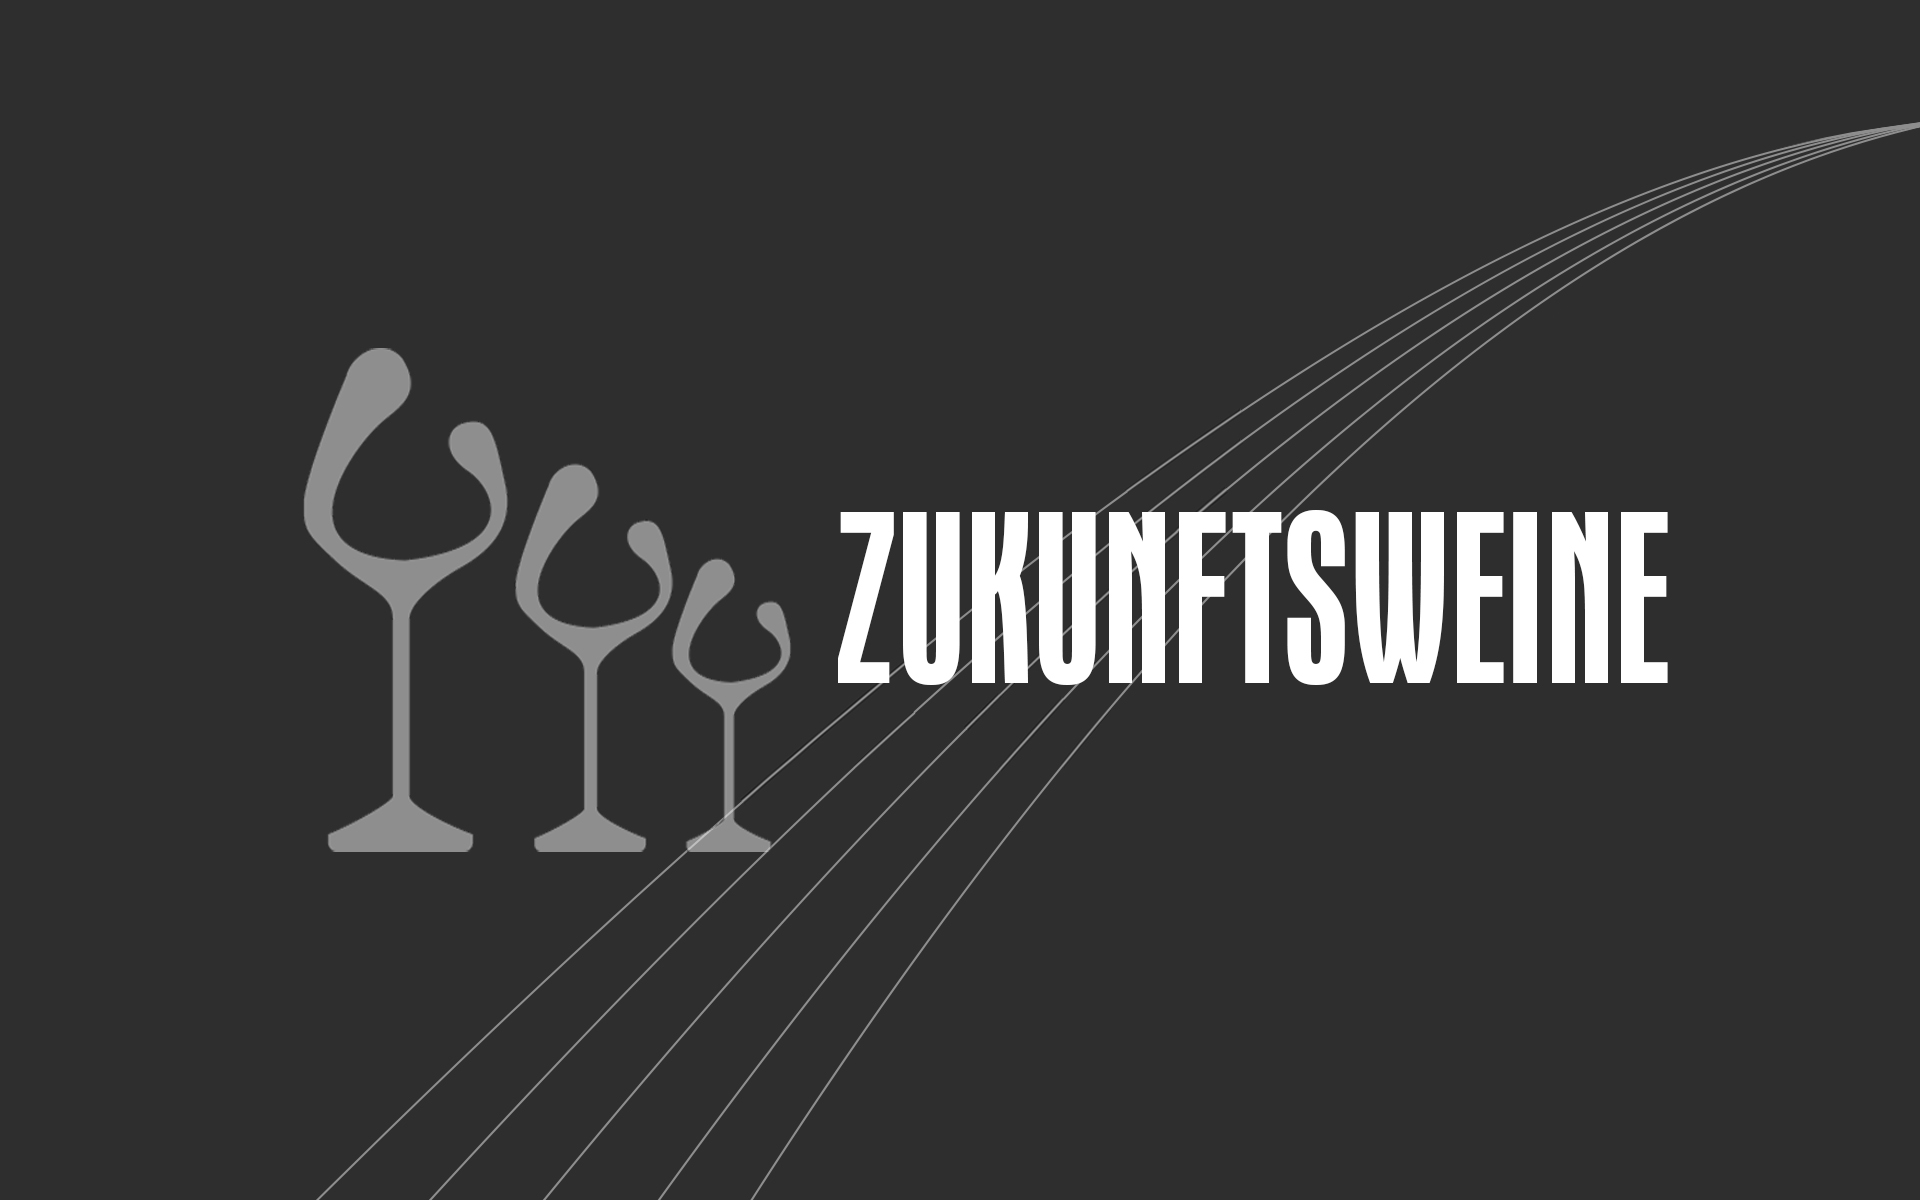 Weinfeder e.V. – Preis der Deutschen Weinkritik – Zukunftswinzer